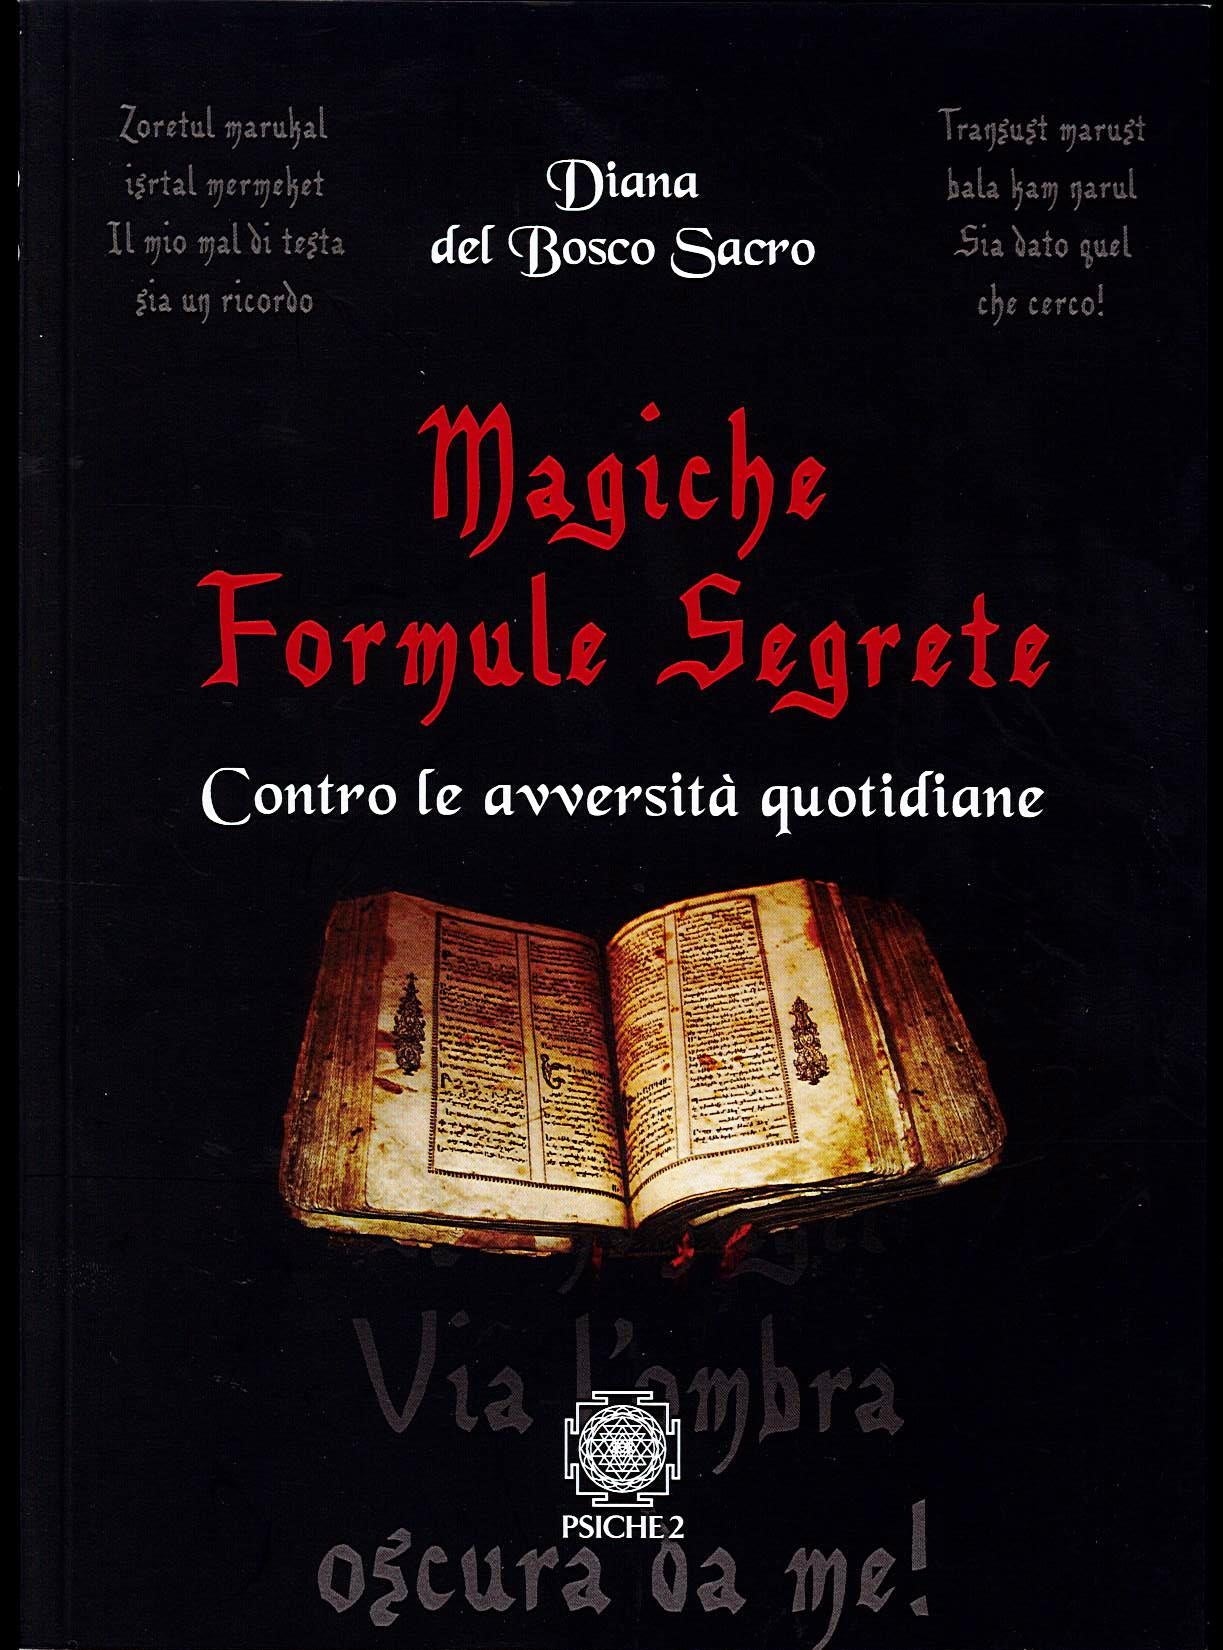 MAGICHE FORMULE SEGRETE - Diana del Bosco Sacro